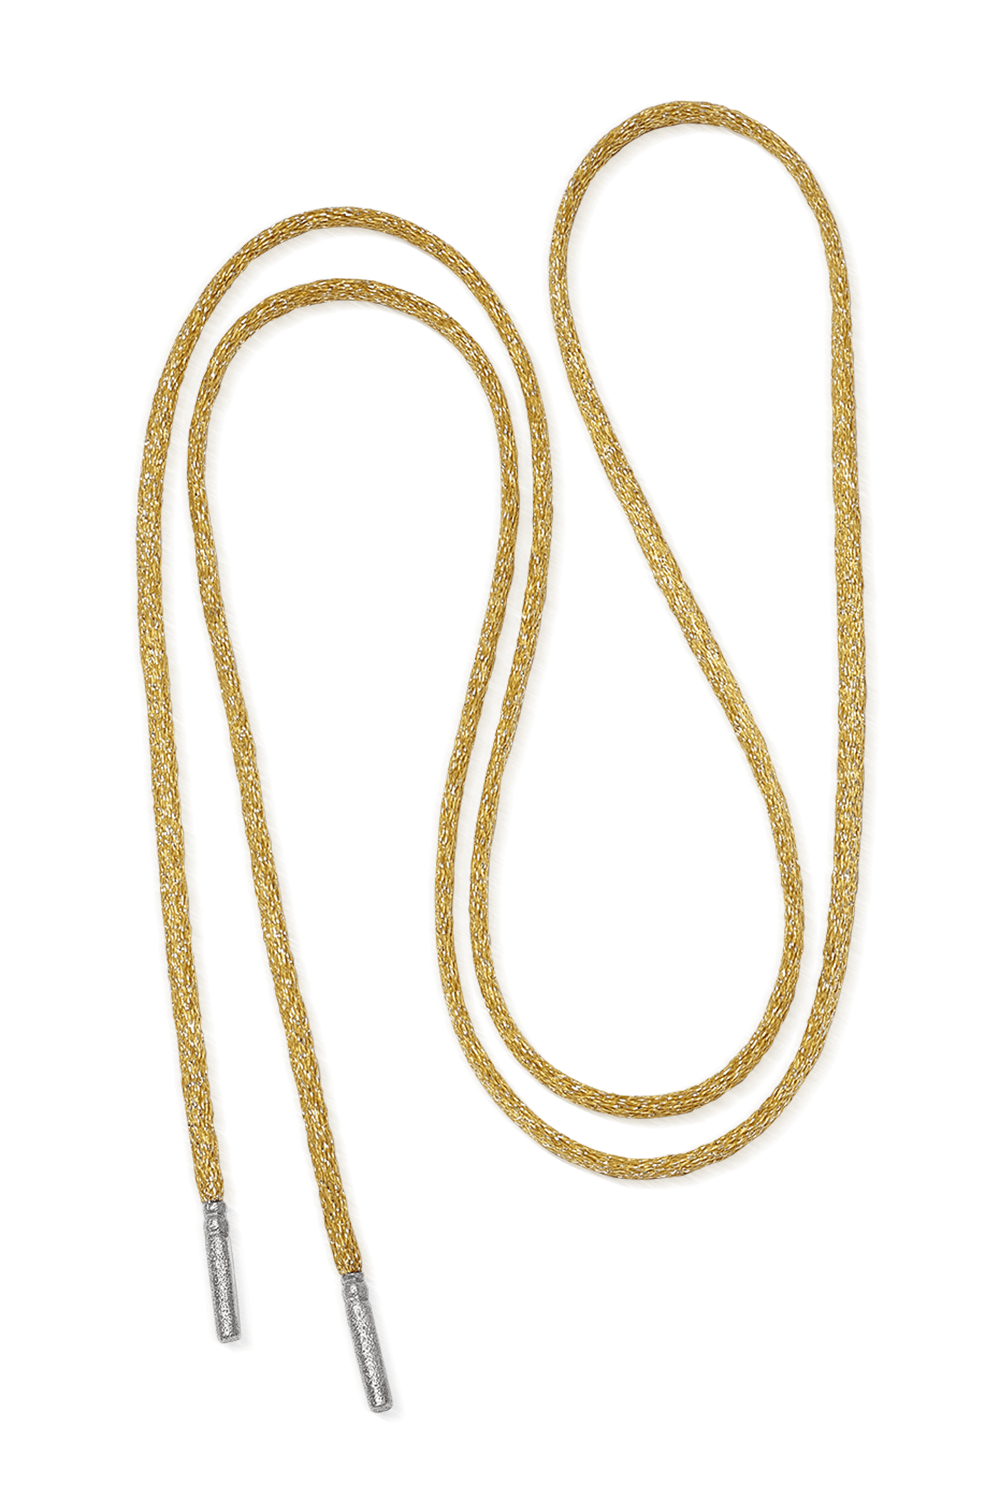 CAROLINA BUCCI-Long Forte Beads Cord - Sun-WHITE GOLD